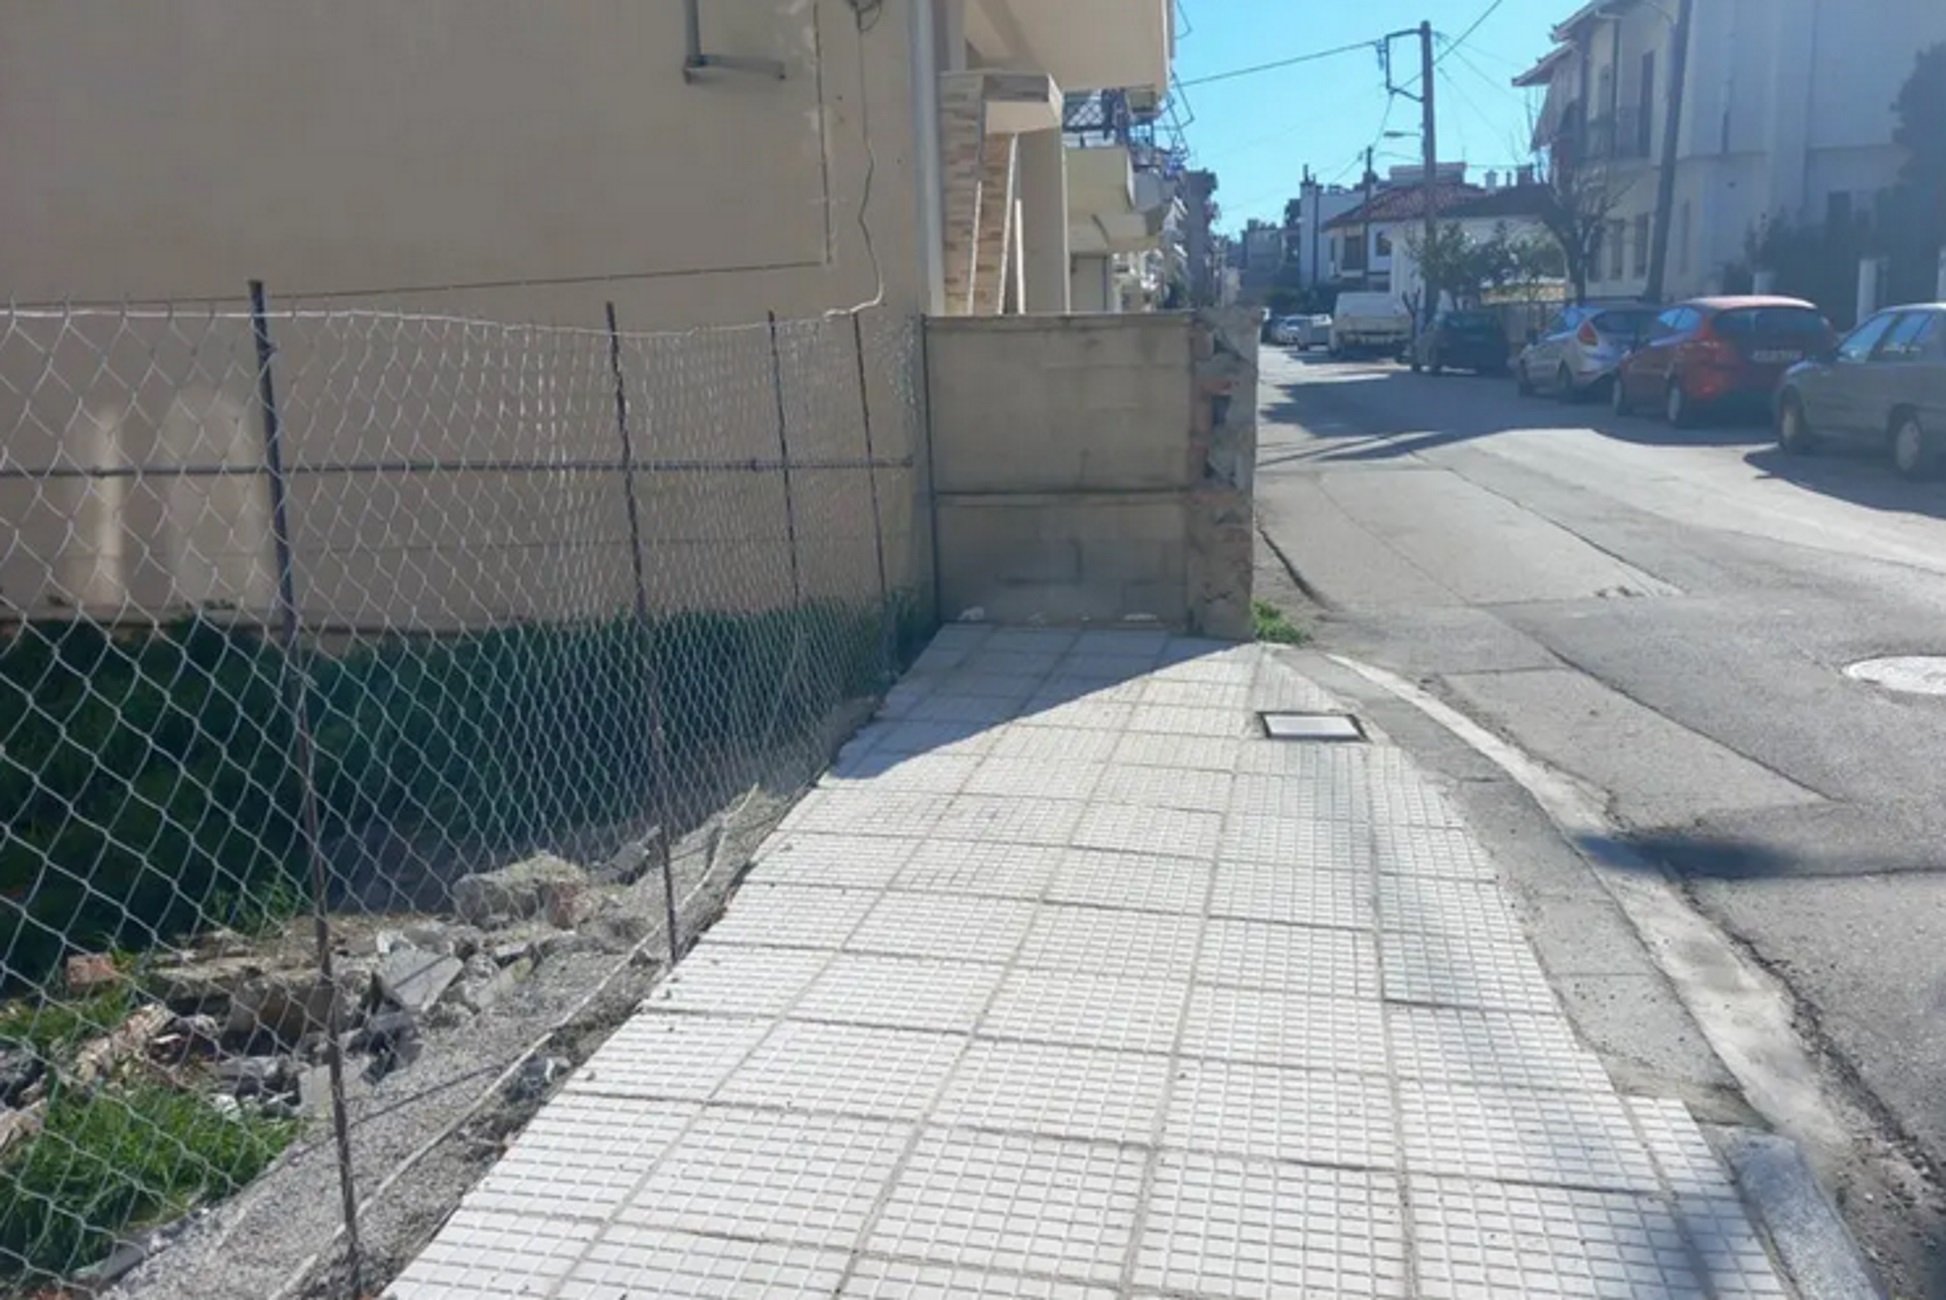 Τρίκαλα: Αυτό είναι το πεζοδρόμιο που καταλήγει σε ντουβάρι και γίνεται viral